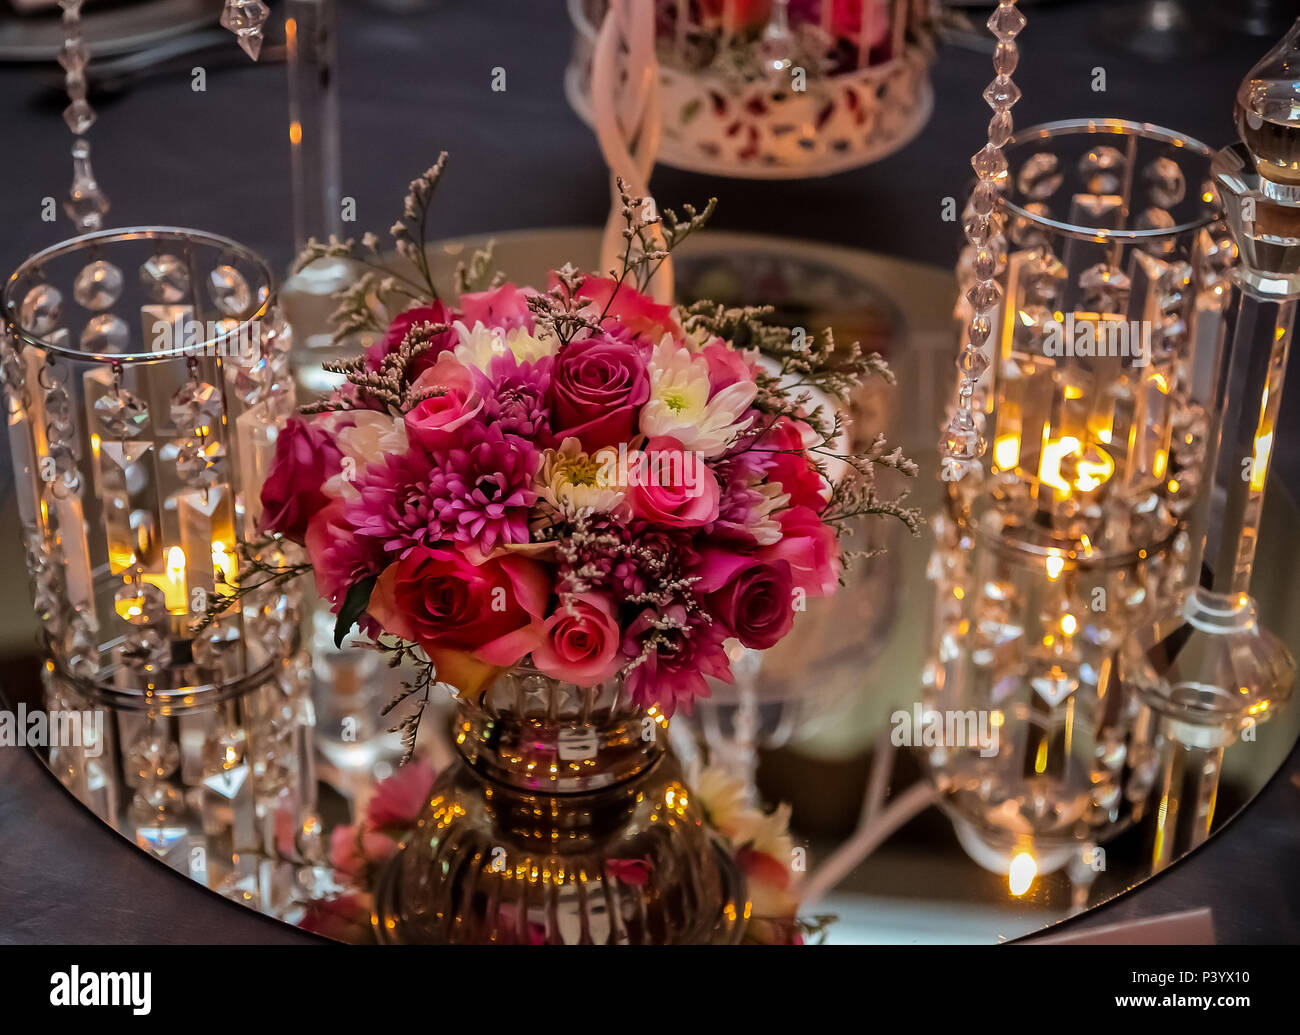 Décor rose et pourpre avec des bougies et lampes pour l'événement d'entreprise ou d'un dîner de gala Banque D'Images